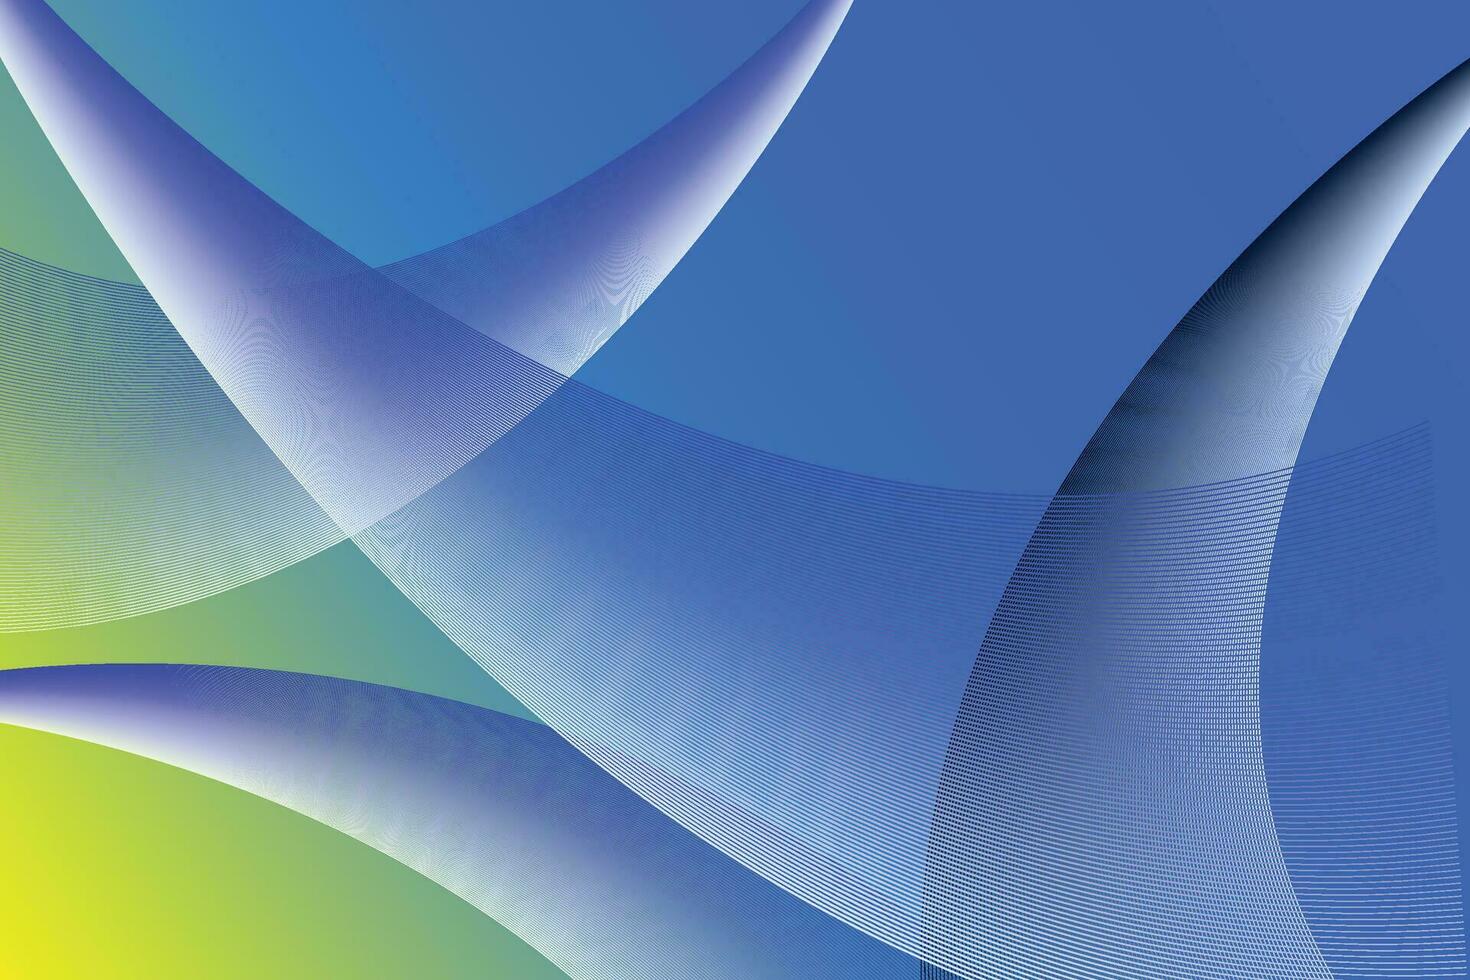 abstract achtergrond, elegant blauw Golf wervelingen achtergrond vector